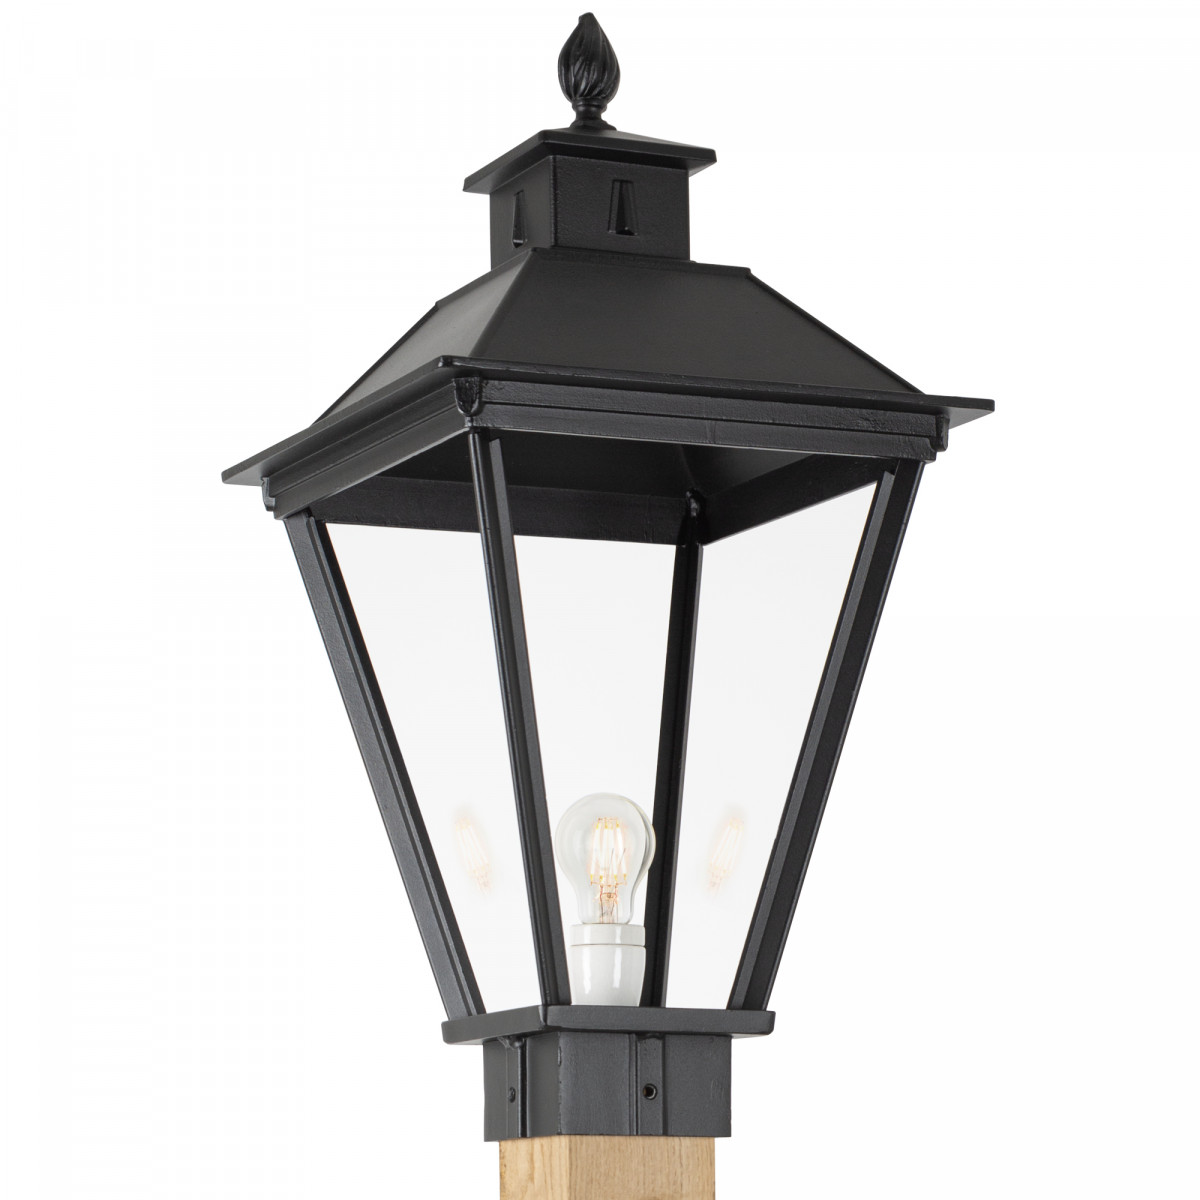 Klassieke buitenlamp Square XL WOOD Lantaarn tuinlamp vierkant in de kleur zwart